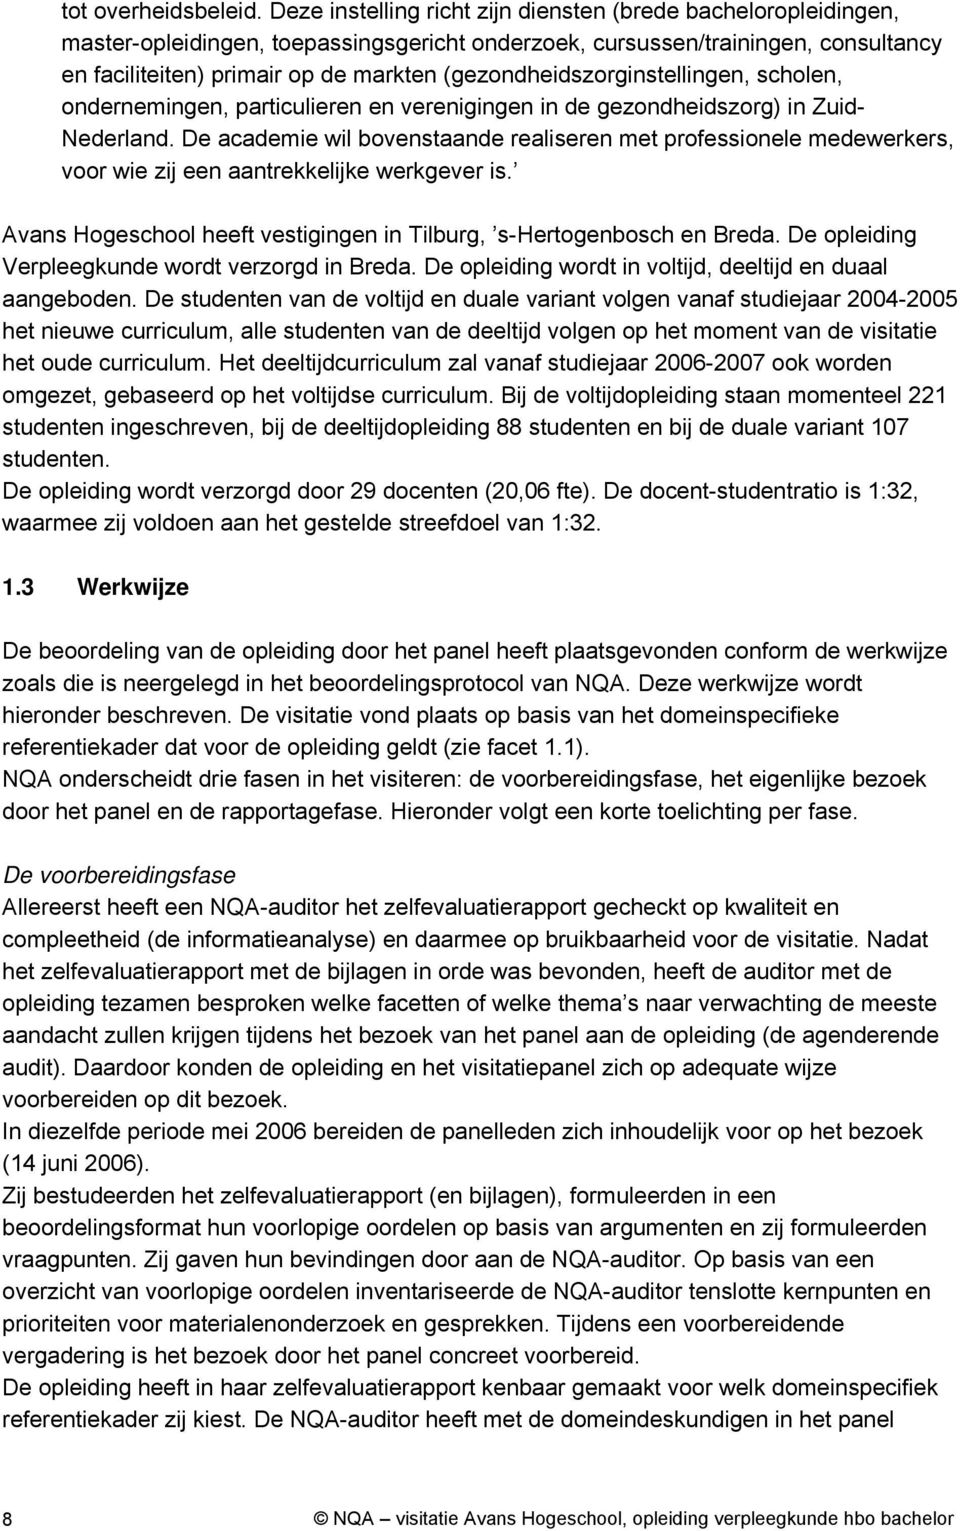 (gezondheidszorginstellingen, scholen, ondernemingen, particulieren en verenigingen in de gezondheidszorg) in Zuid Nederland.